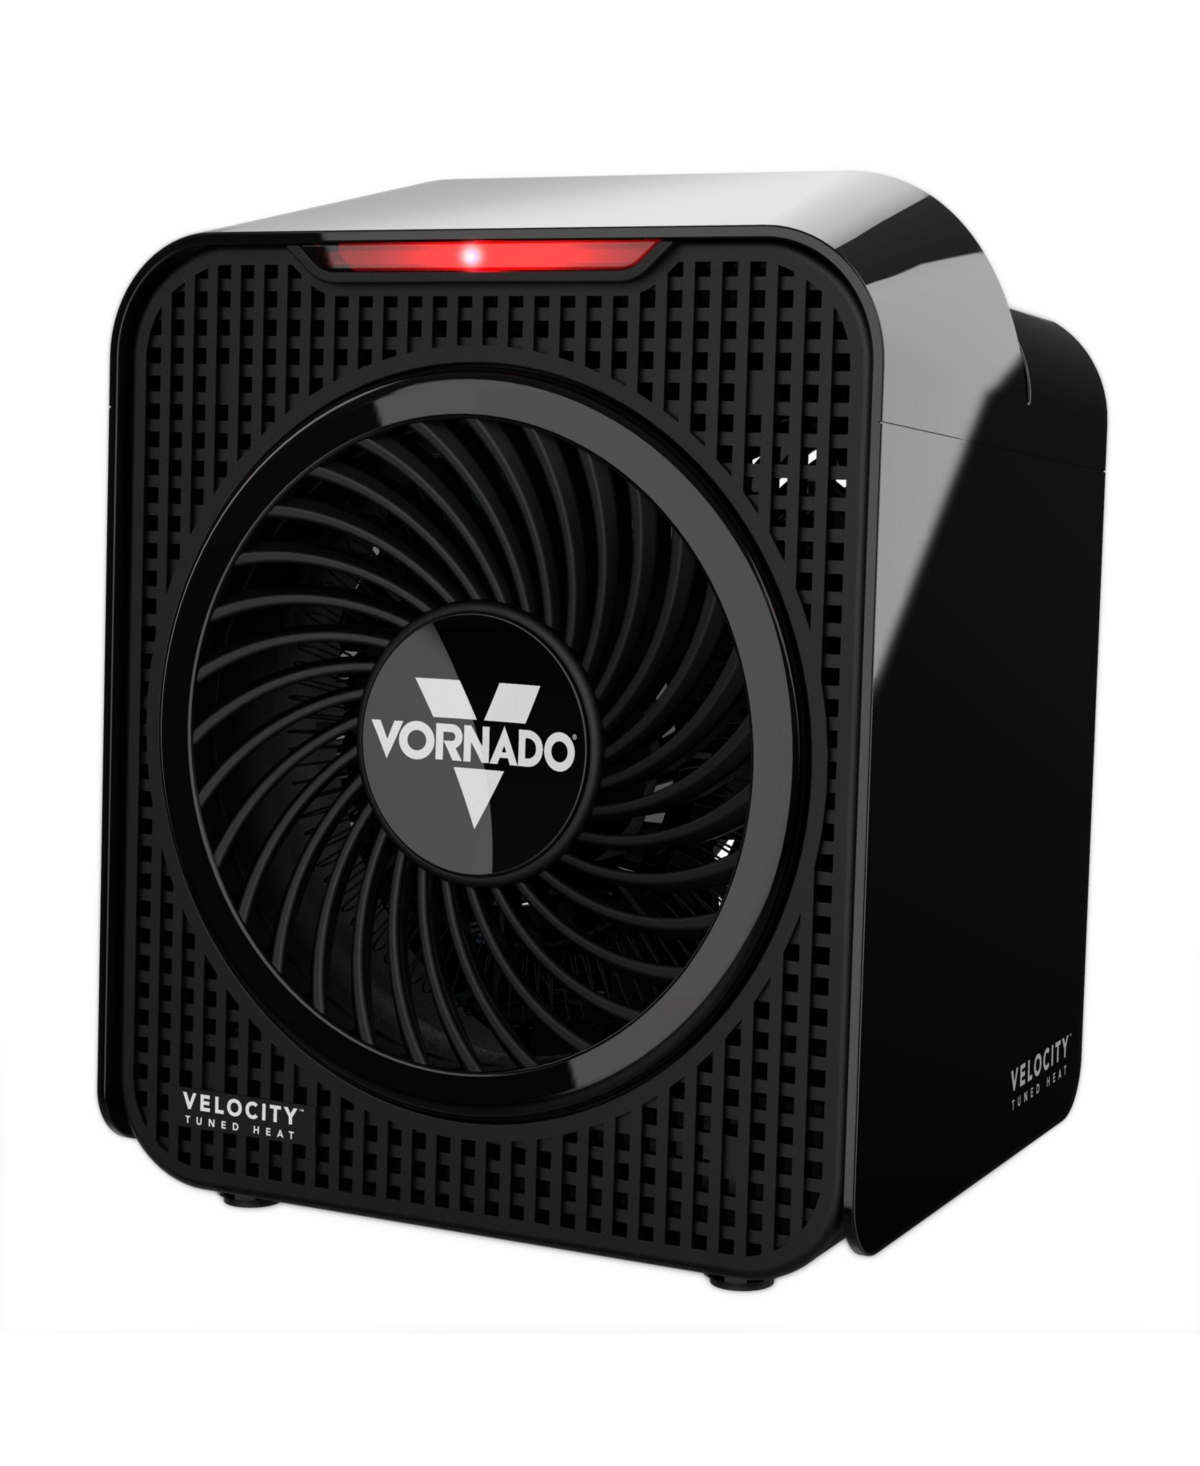 Vornado Velocity 1 Personal Heater - Black